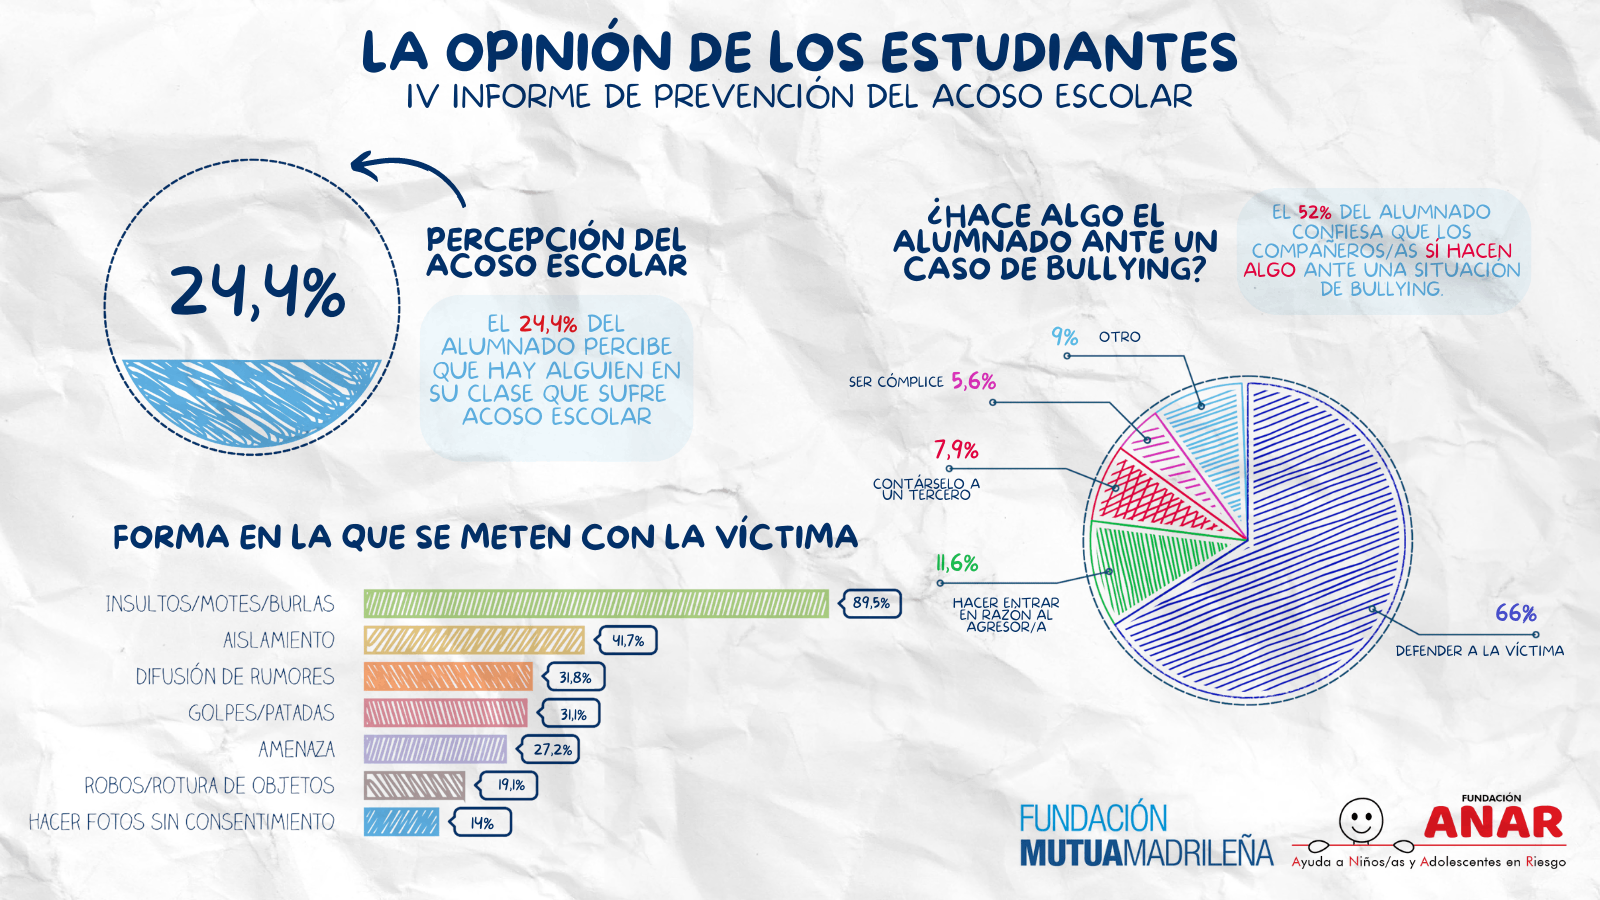 ANAR y Mutua Madrileña presentan el IV Informe ‘La opinión de los estudiantes’ sobre acoso escolar